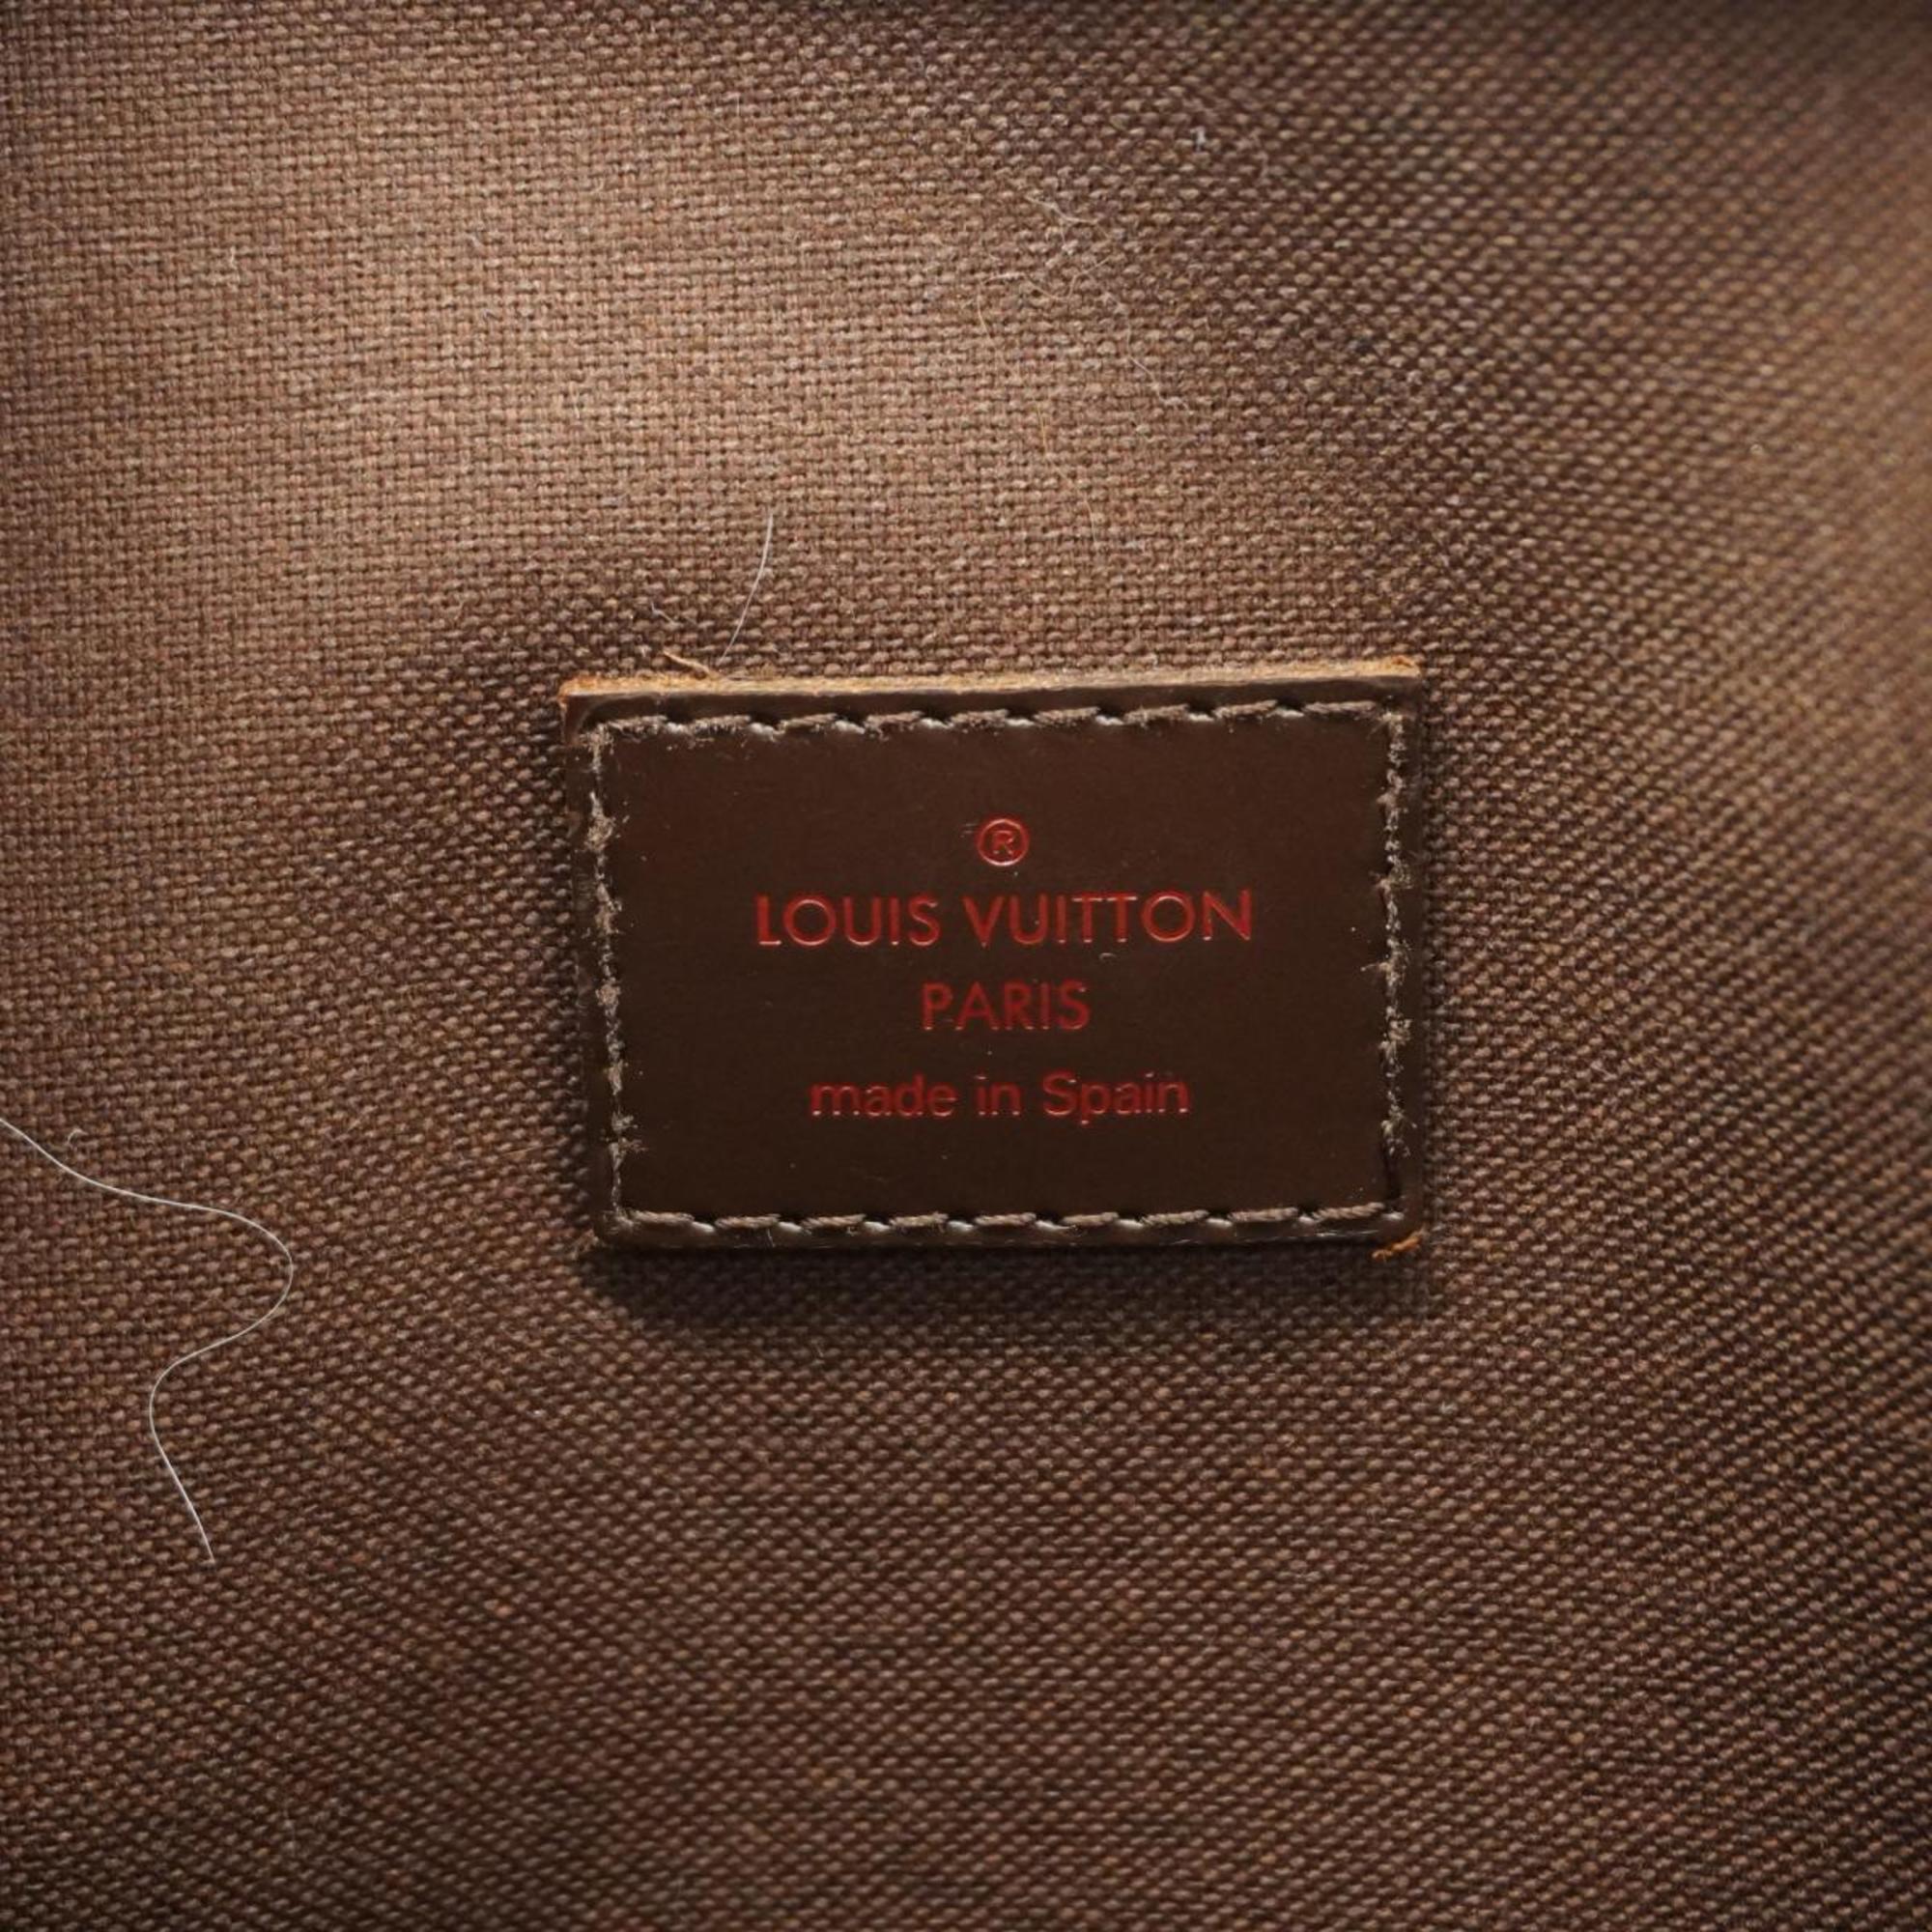 ルイ・ヴィトン(Louis Vuitton) ルイ・ヴィトン トートバッグ ダミエ カバボブール N52006 エベヌレディース